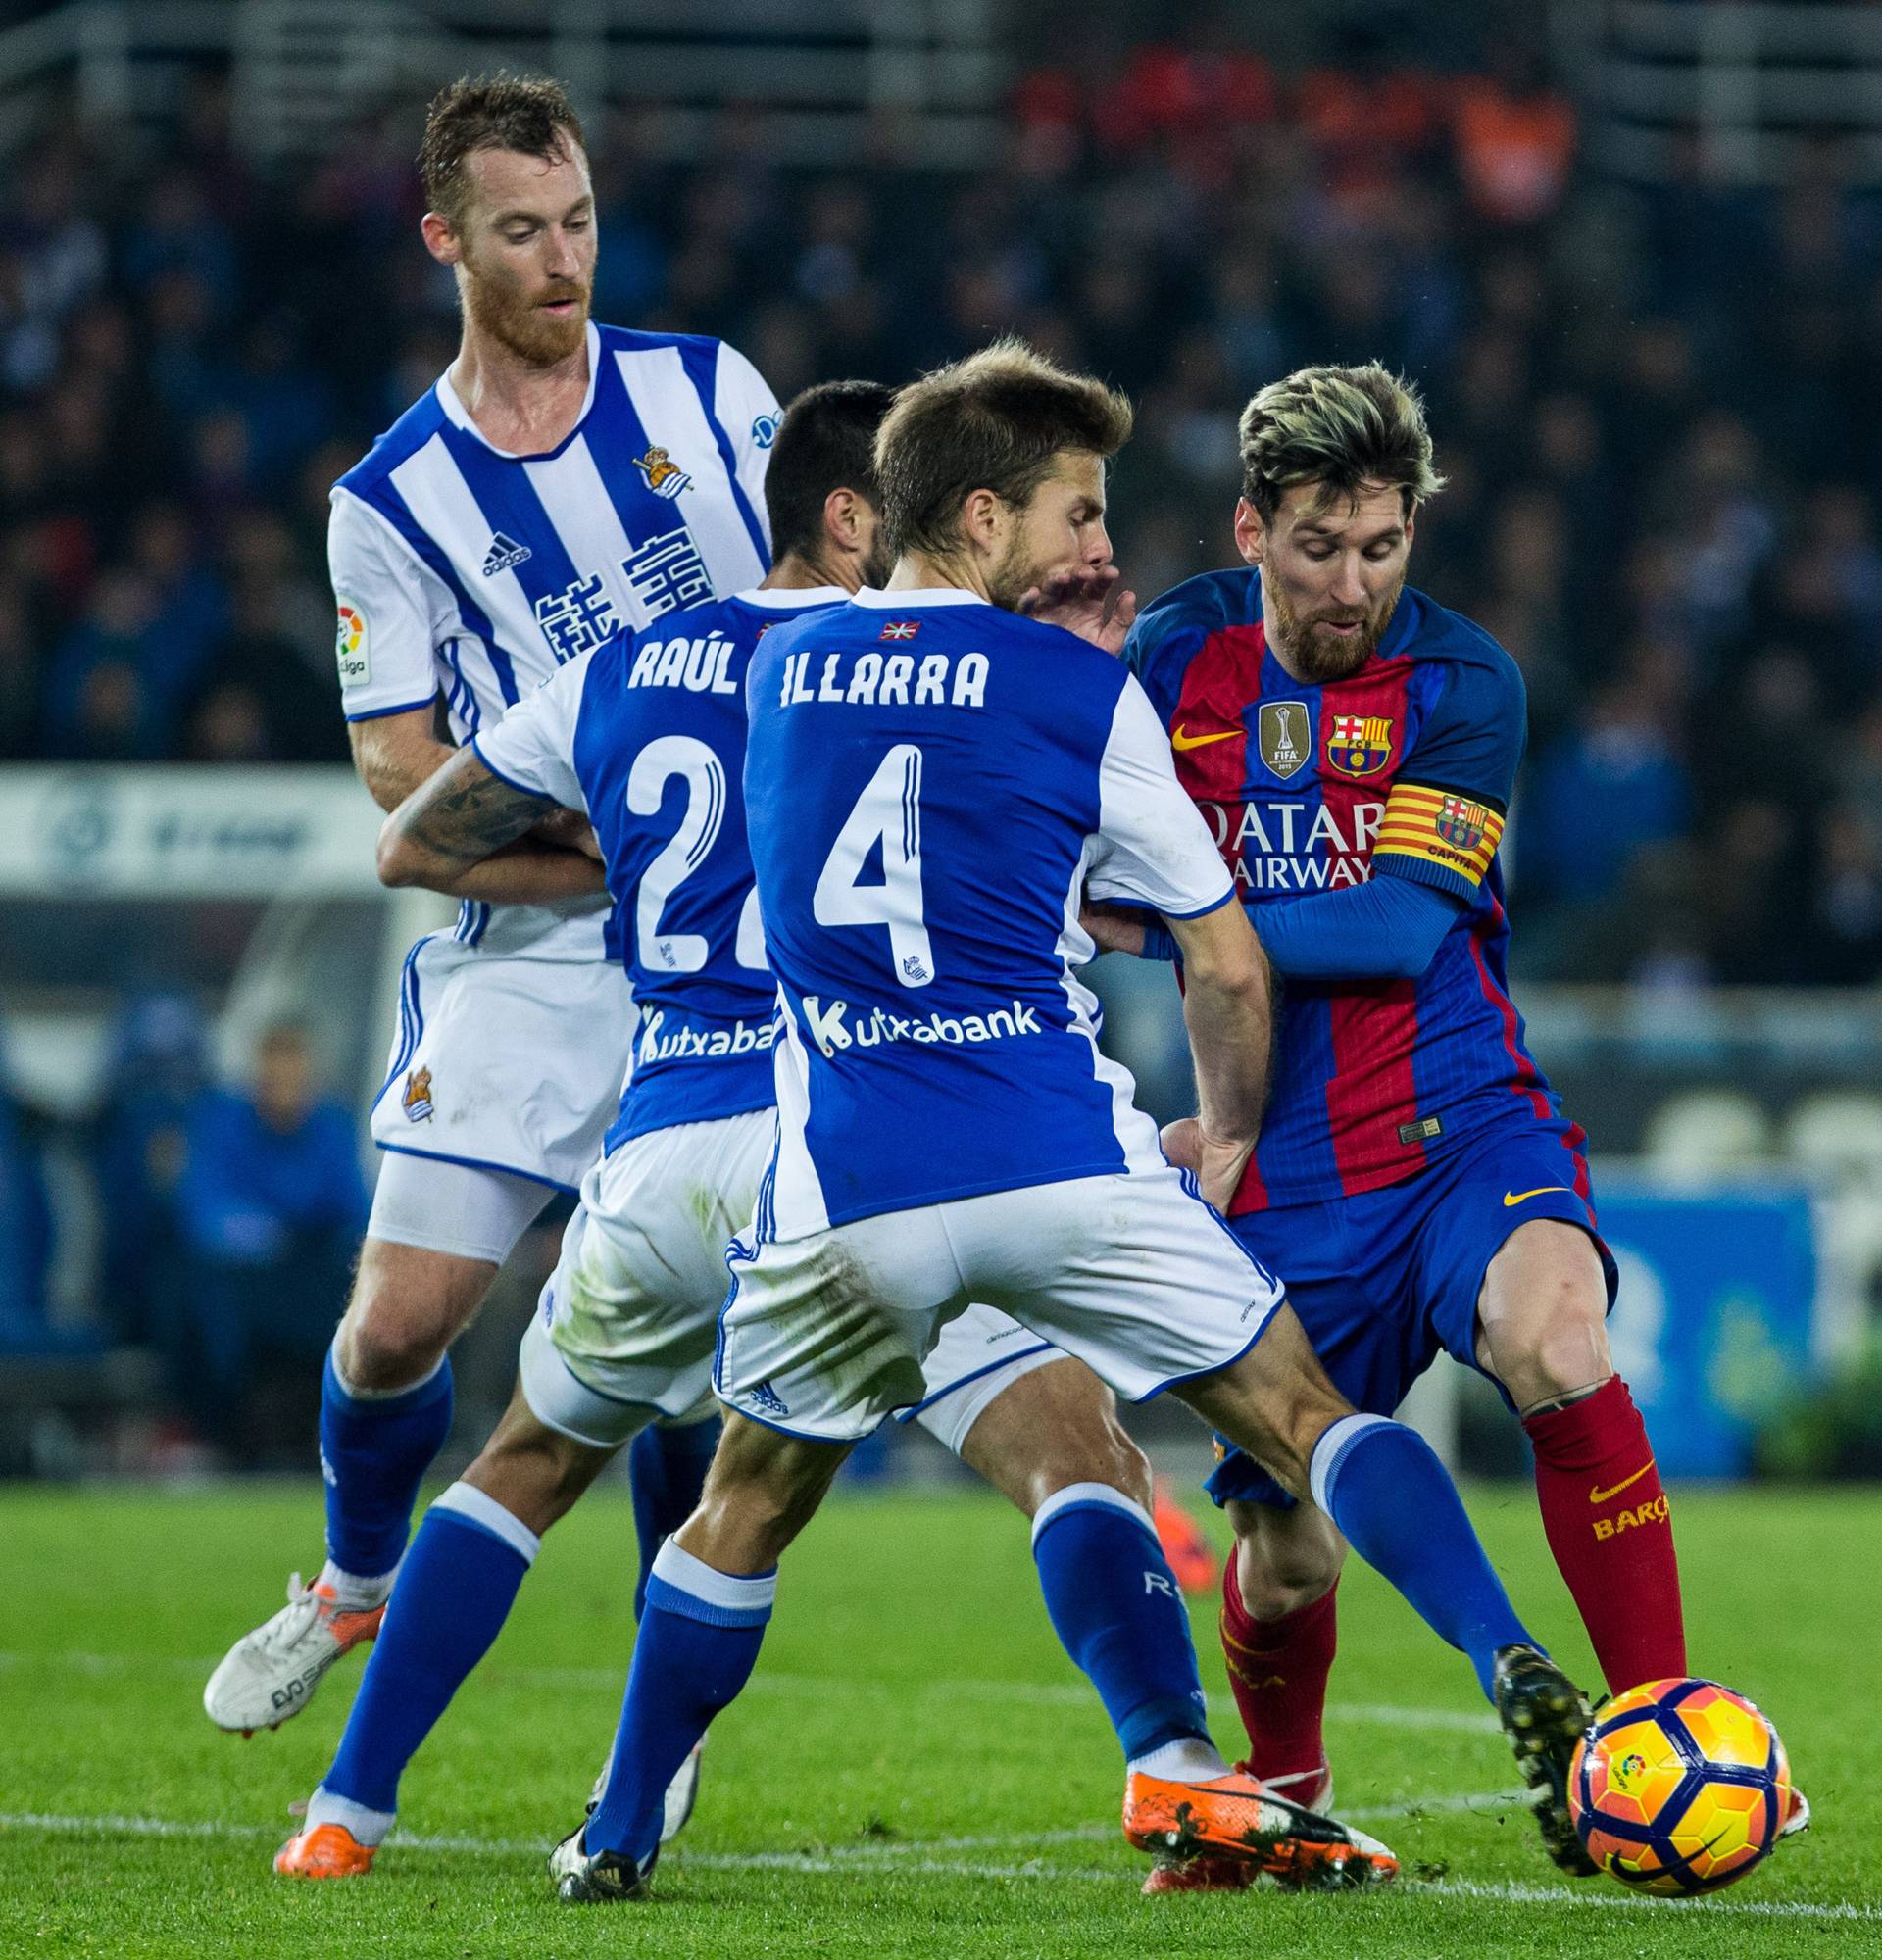 Match ofLa Liga, between Real Sociedad and Futbol Club Barcelona